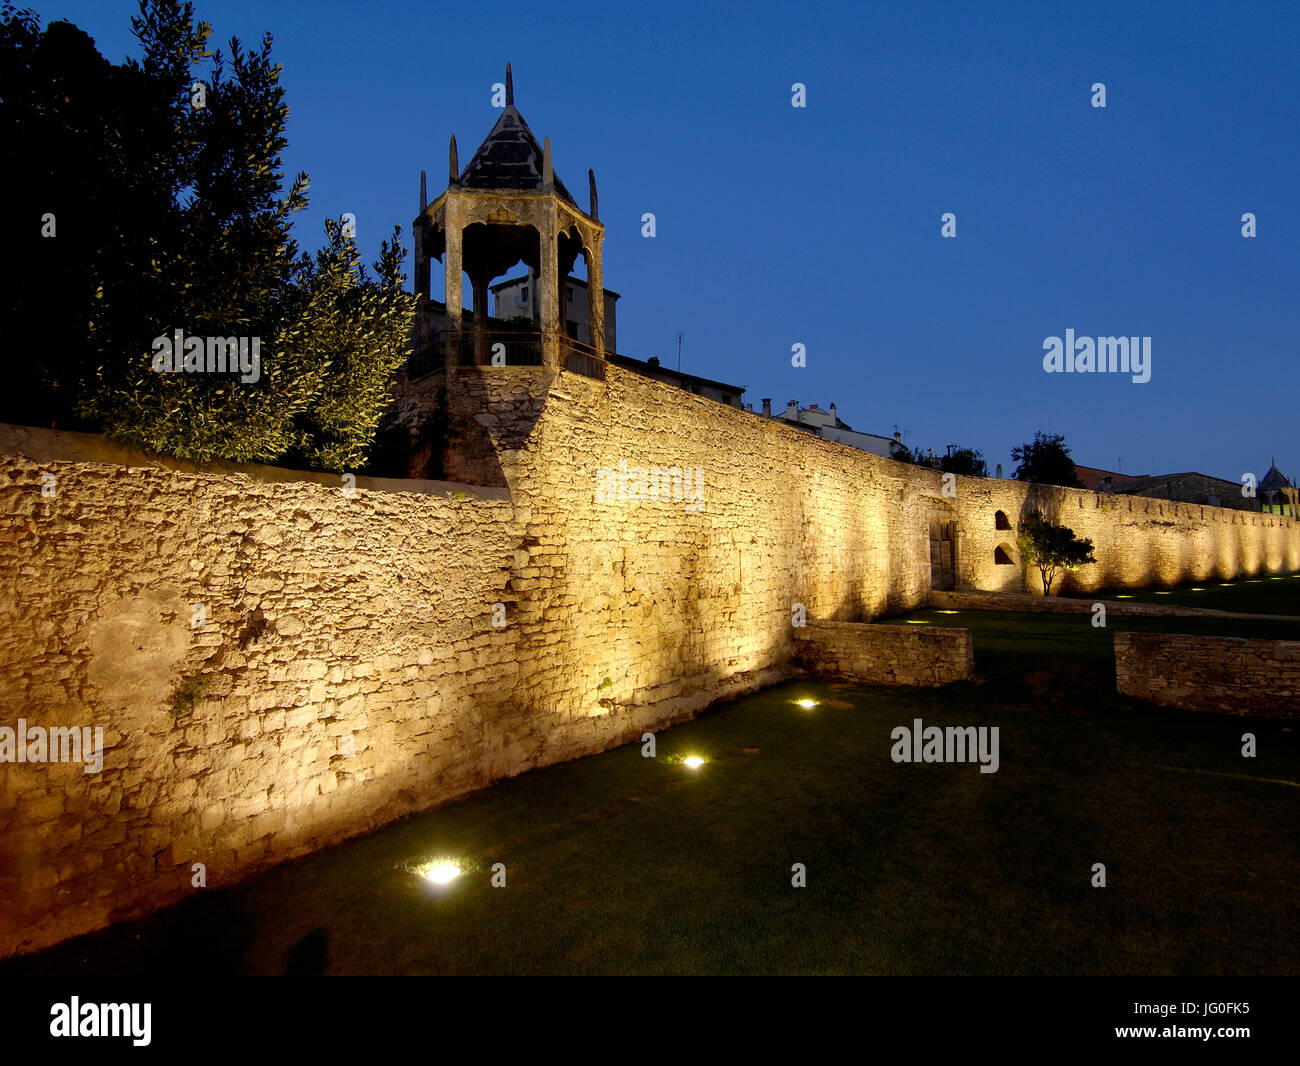 Walls of Banyoles, Girona province, Catalonia,Spain Stock Photo